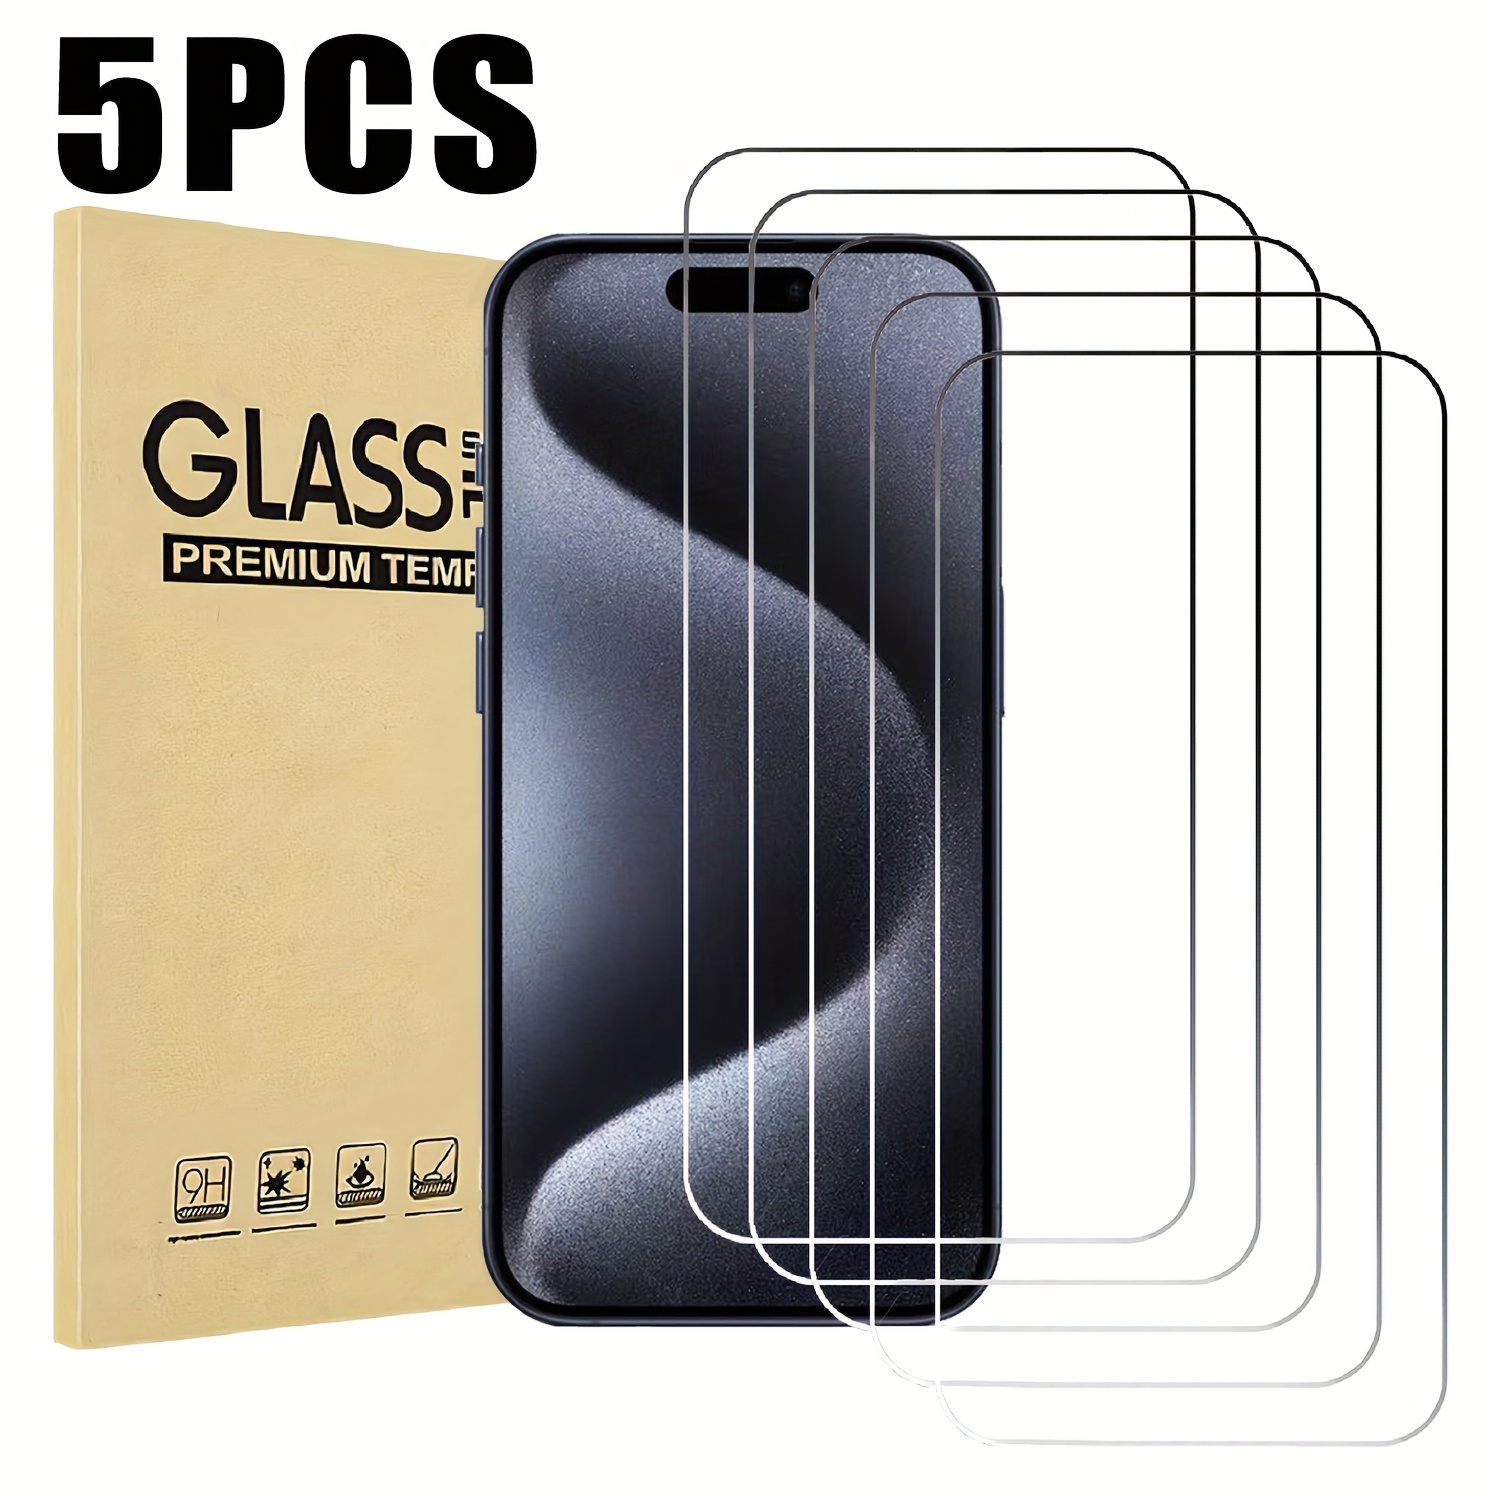 Protector de pantalla para iPhone 11 Pro Max/iPhone Xs MAX [cobertura  completa] vidrio templado, transparente (paquete de 3)